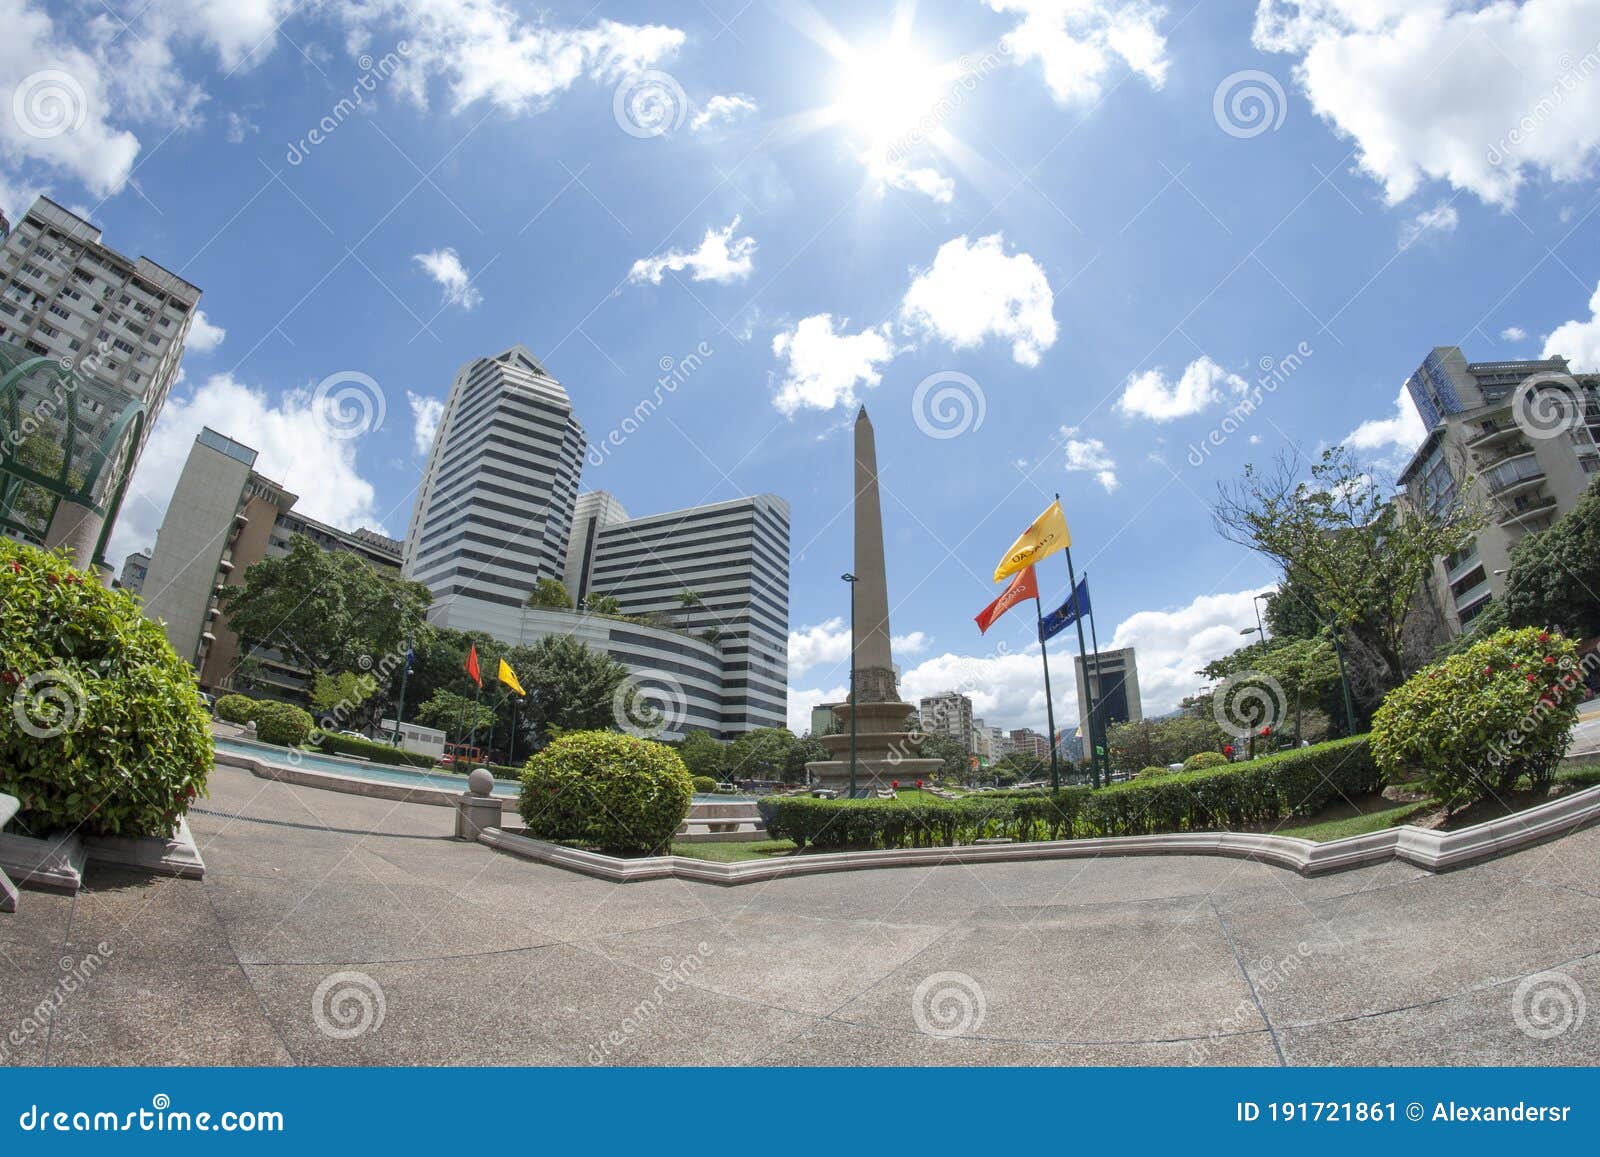 plaza altamira plaza francia altamira square france square, altamira, caracas, venezuela